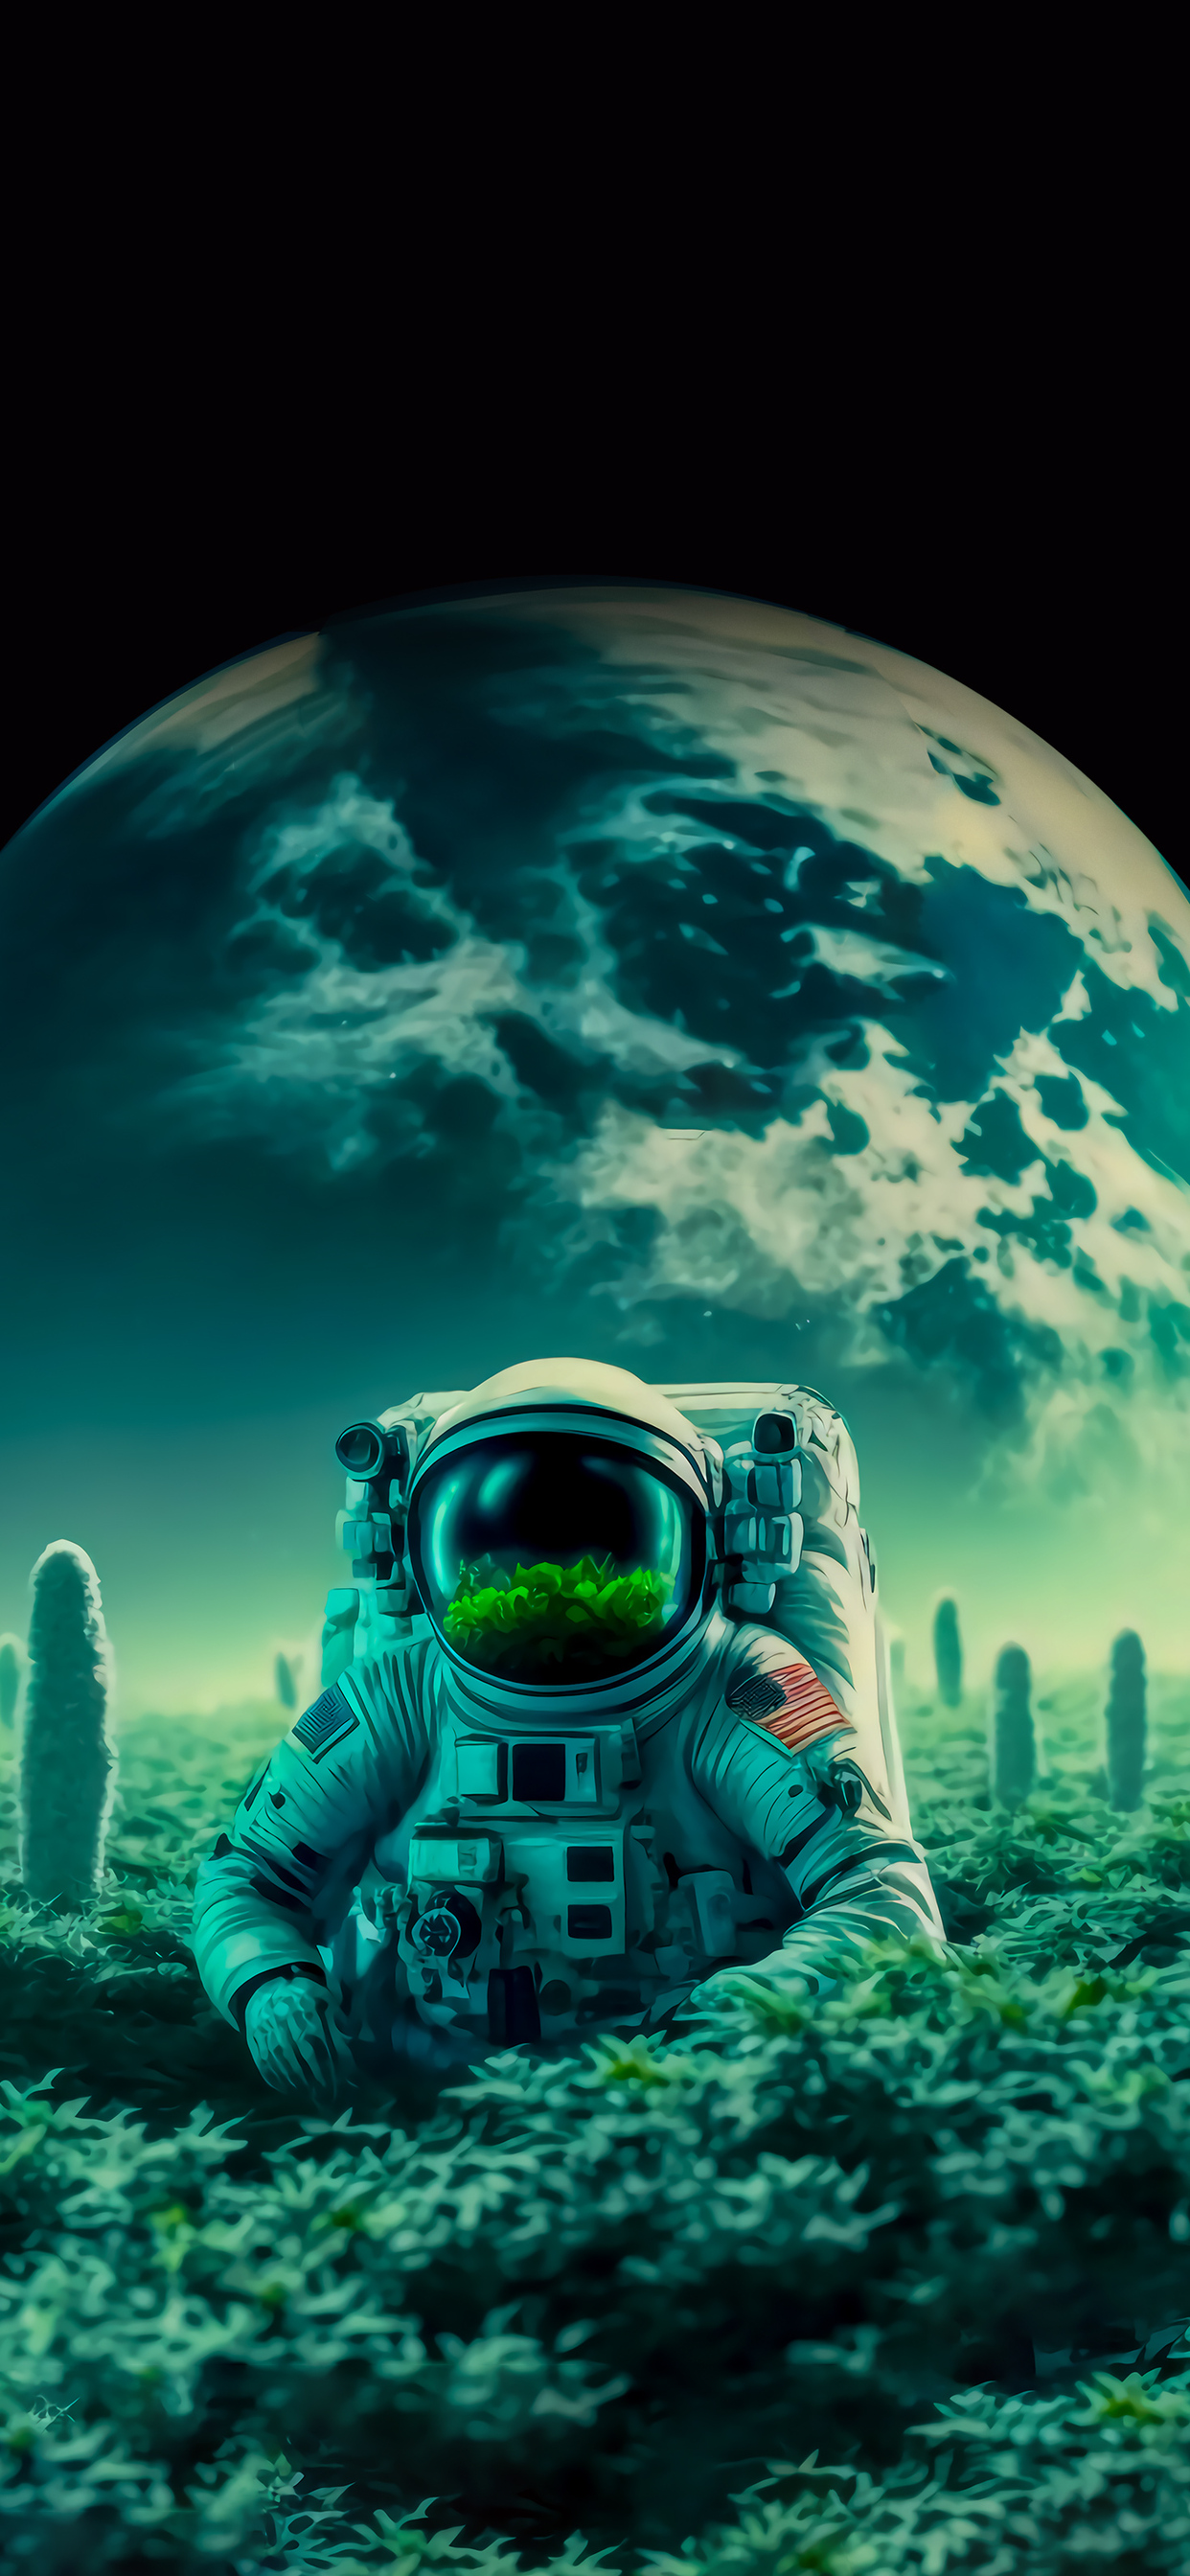 astronaut-in-dreamy-land-om.jpg